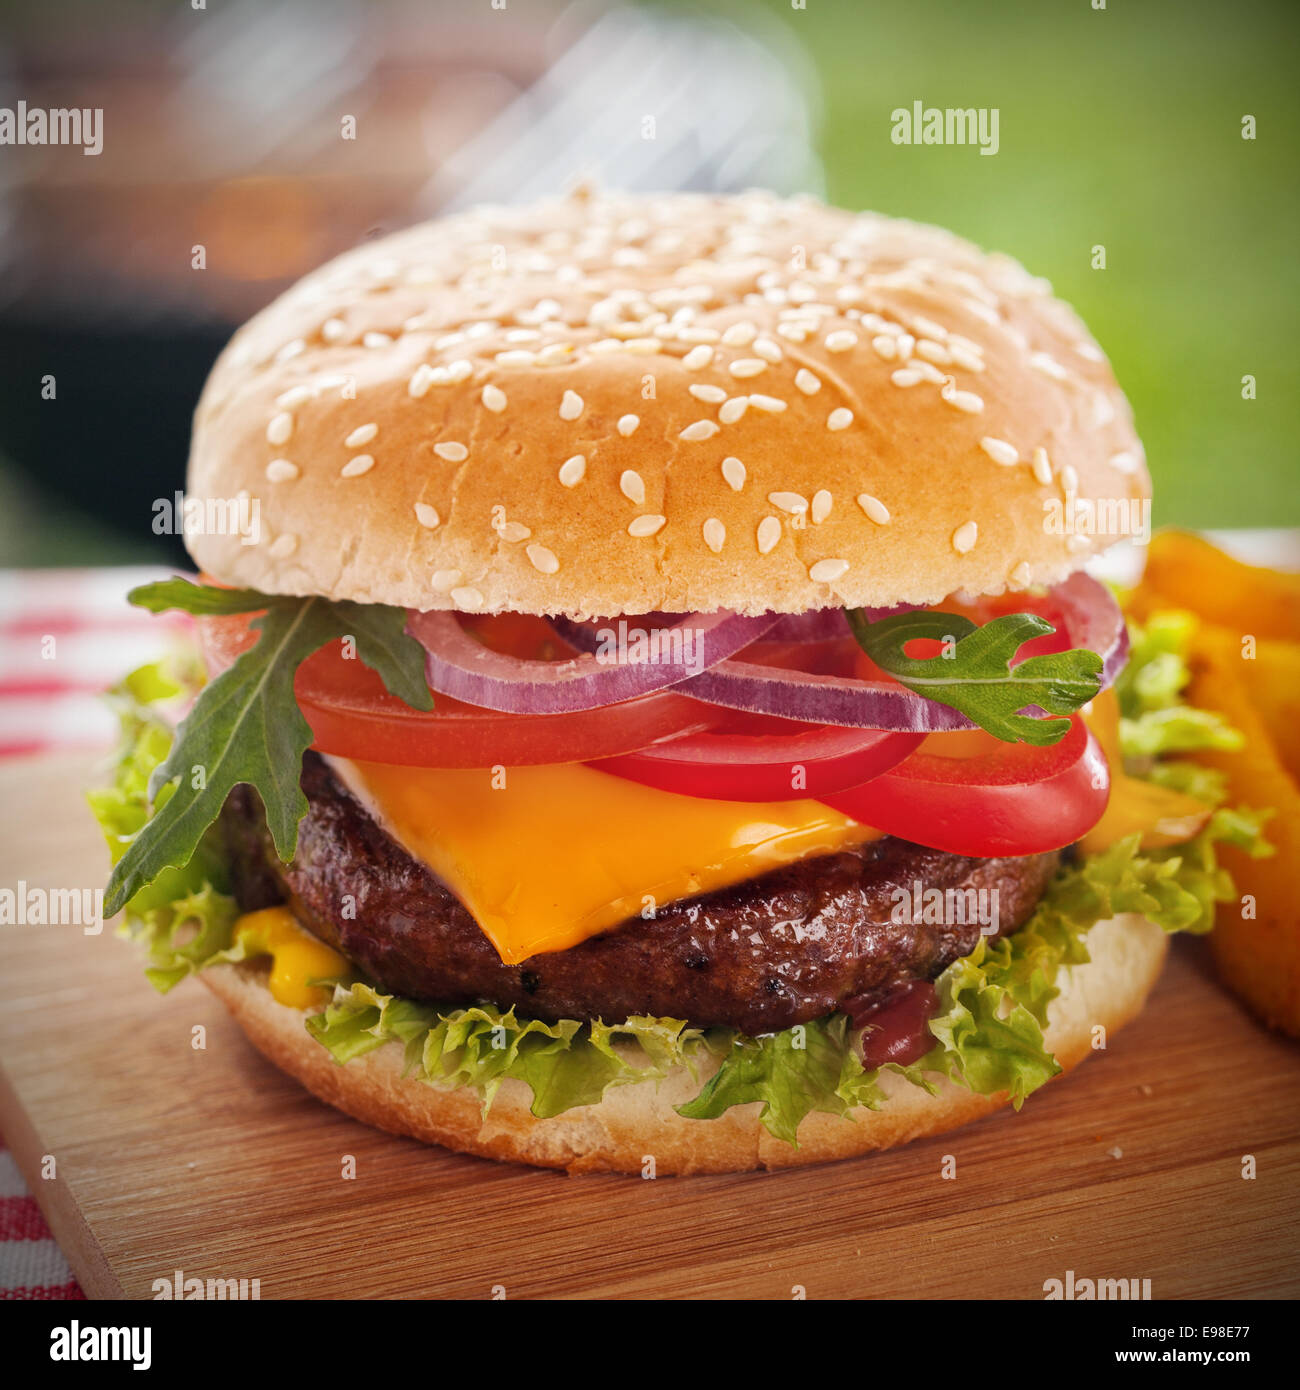 Leckere Burger mit Käse überbacken und einem dicken saftigen Boden Rindfleisch Patty, garniert mit Salat, Tomate, Zwiebel und Rucola auf einer Sesam Brötchen auf einem Picknick-Tisch im Garten steht Stockfoto